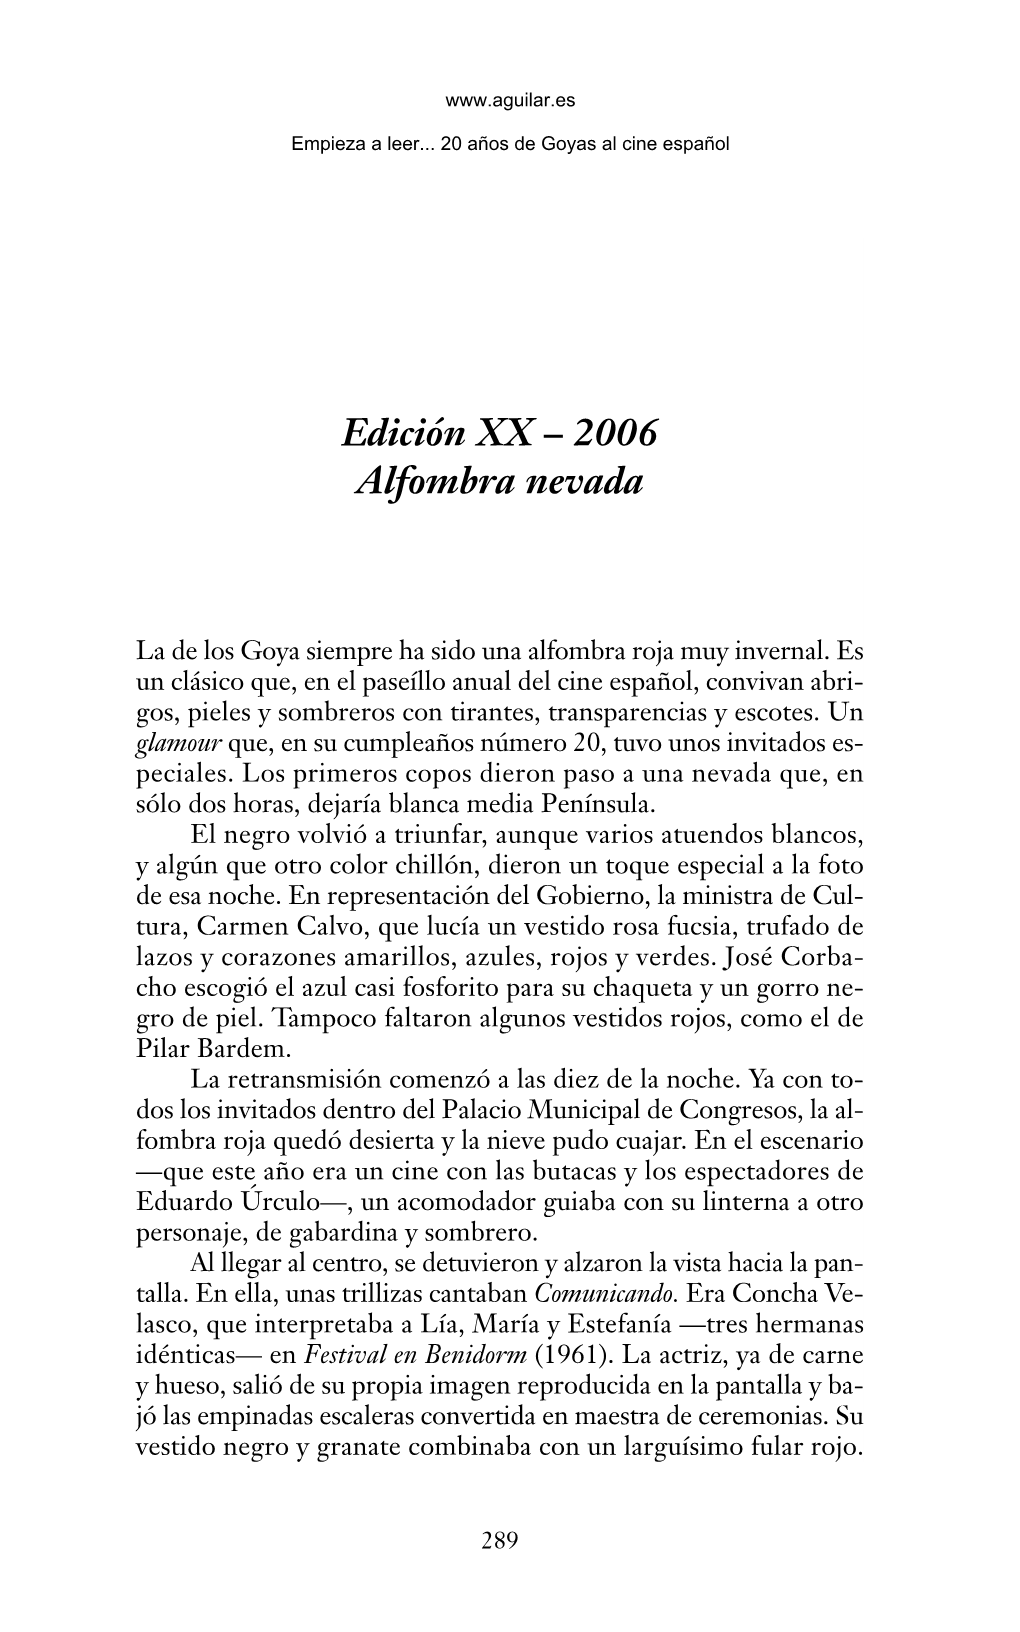 20 Años De Premios Goya 18/10/06 16:51 Página 289